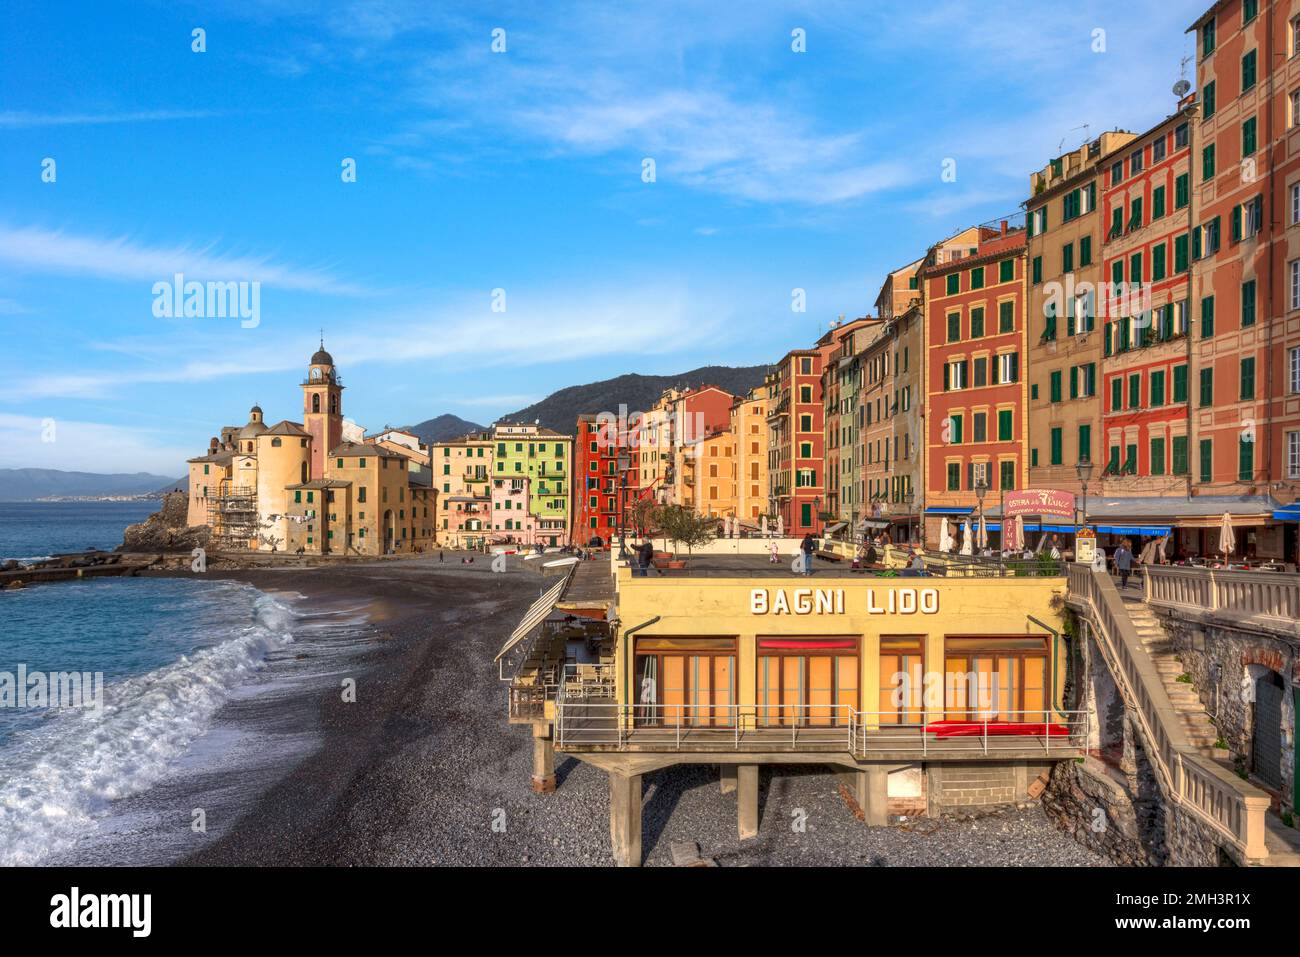 Camogli, Genoa, Liguria, Italy Stock Photo